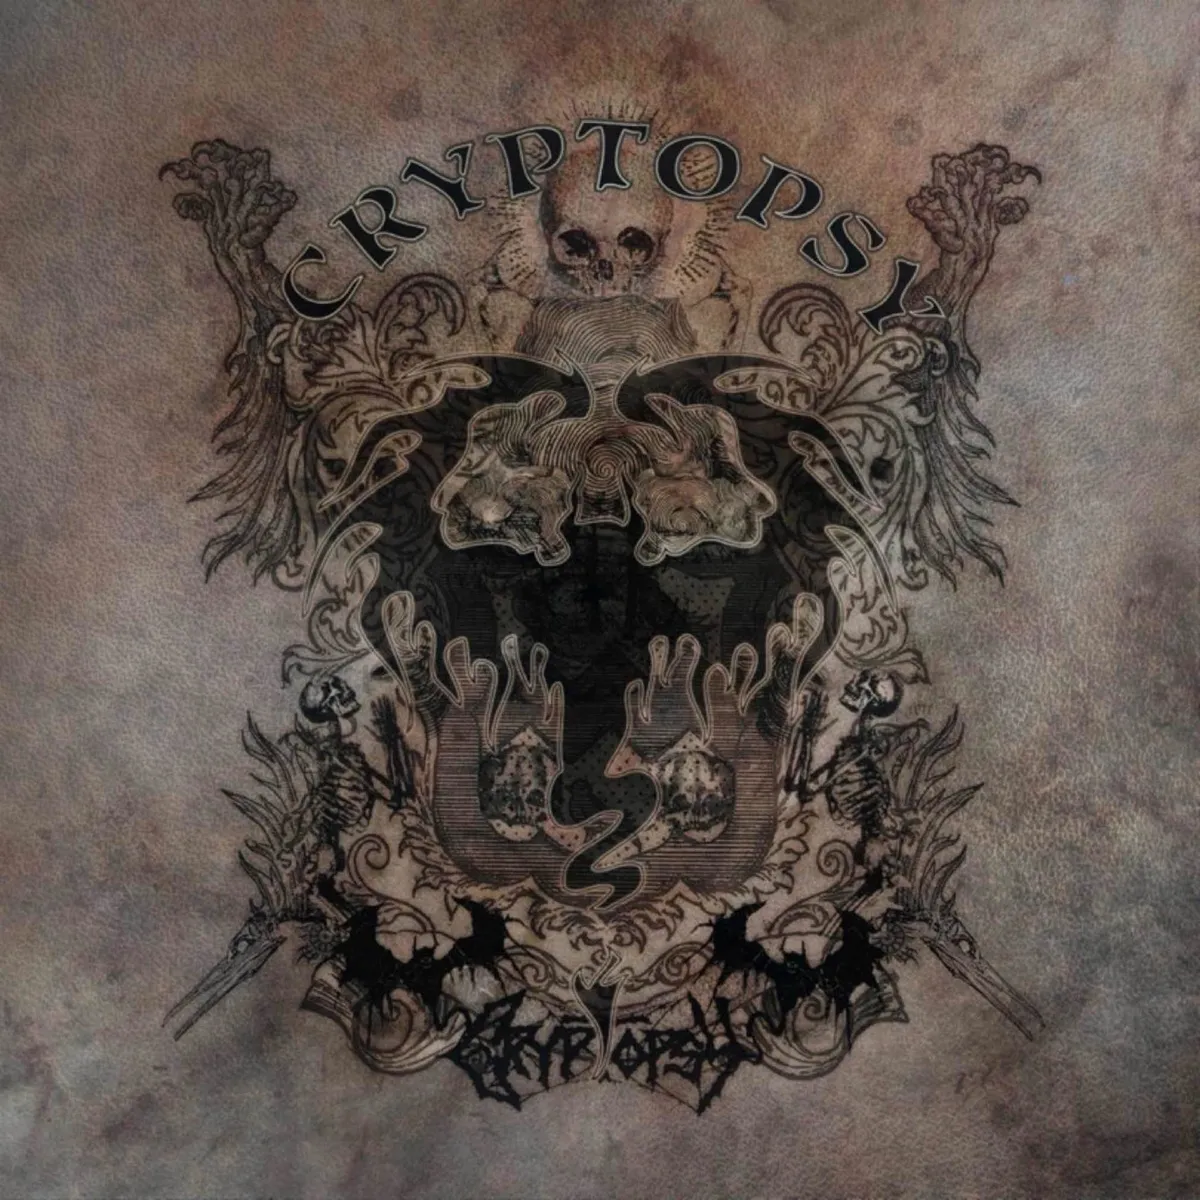 Cryptopsy – Cryptopsy CD cover